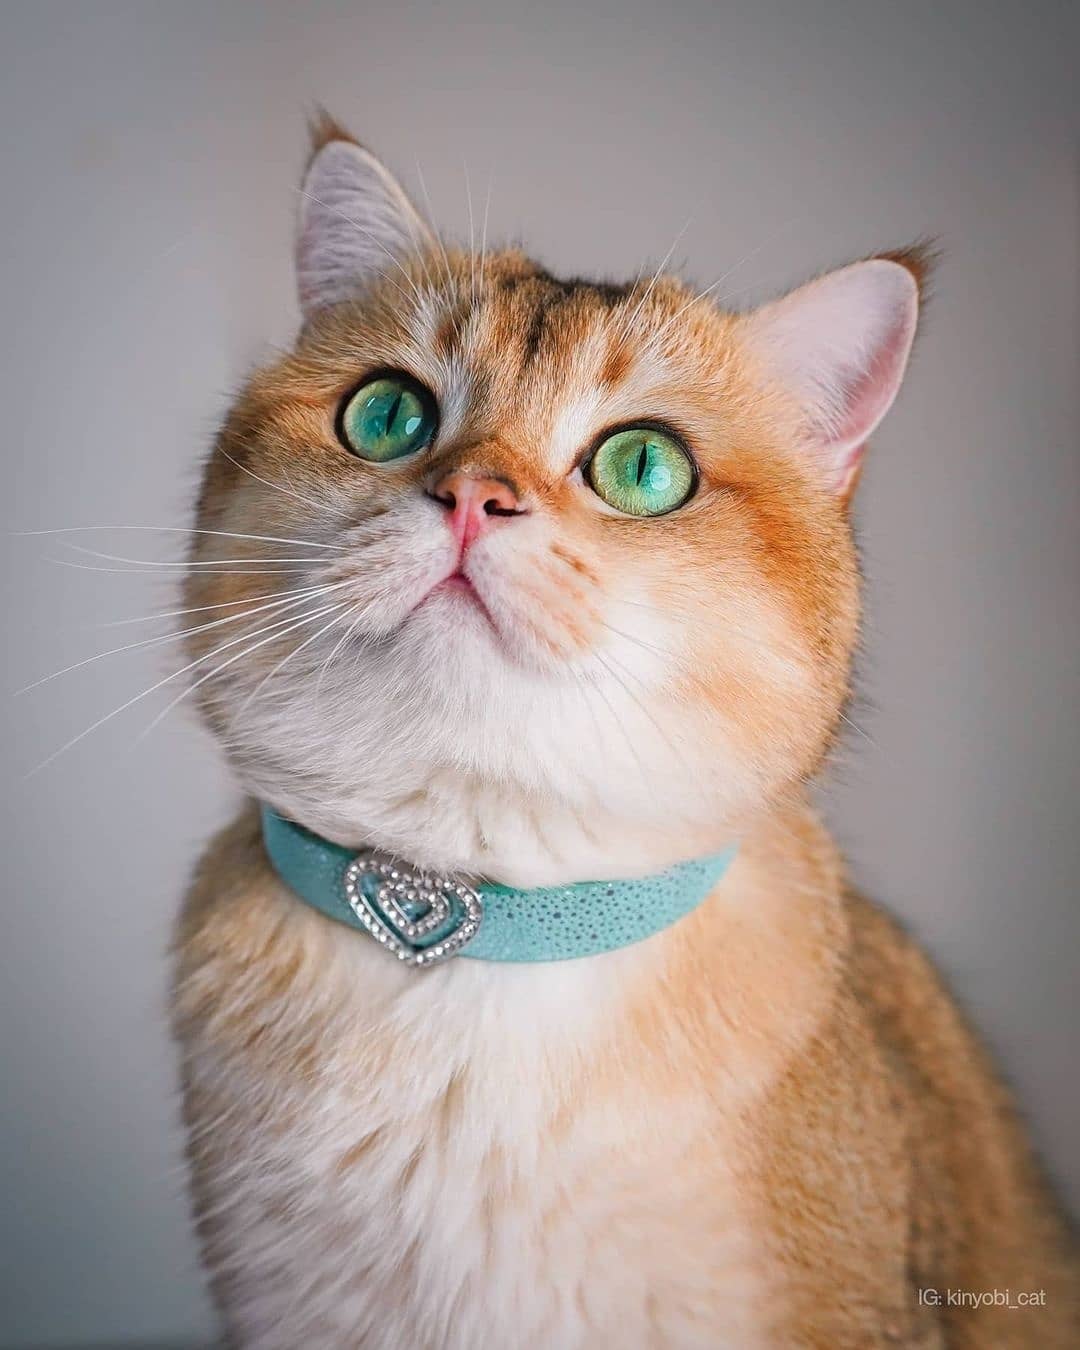 The Aquamarine designer cat collar